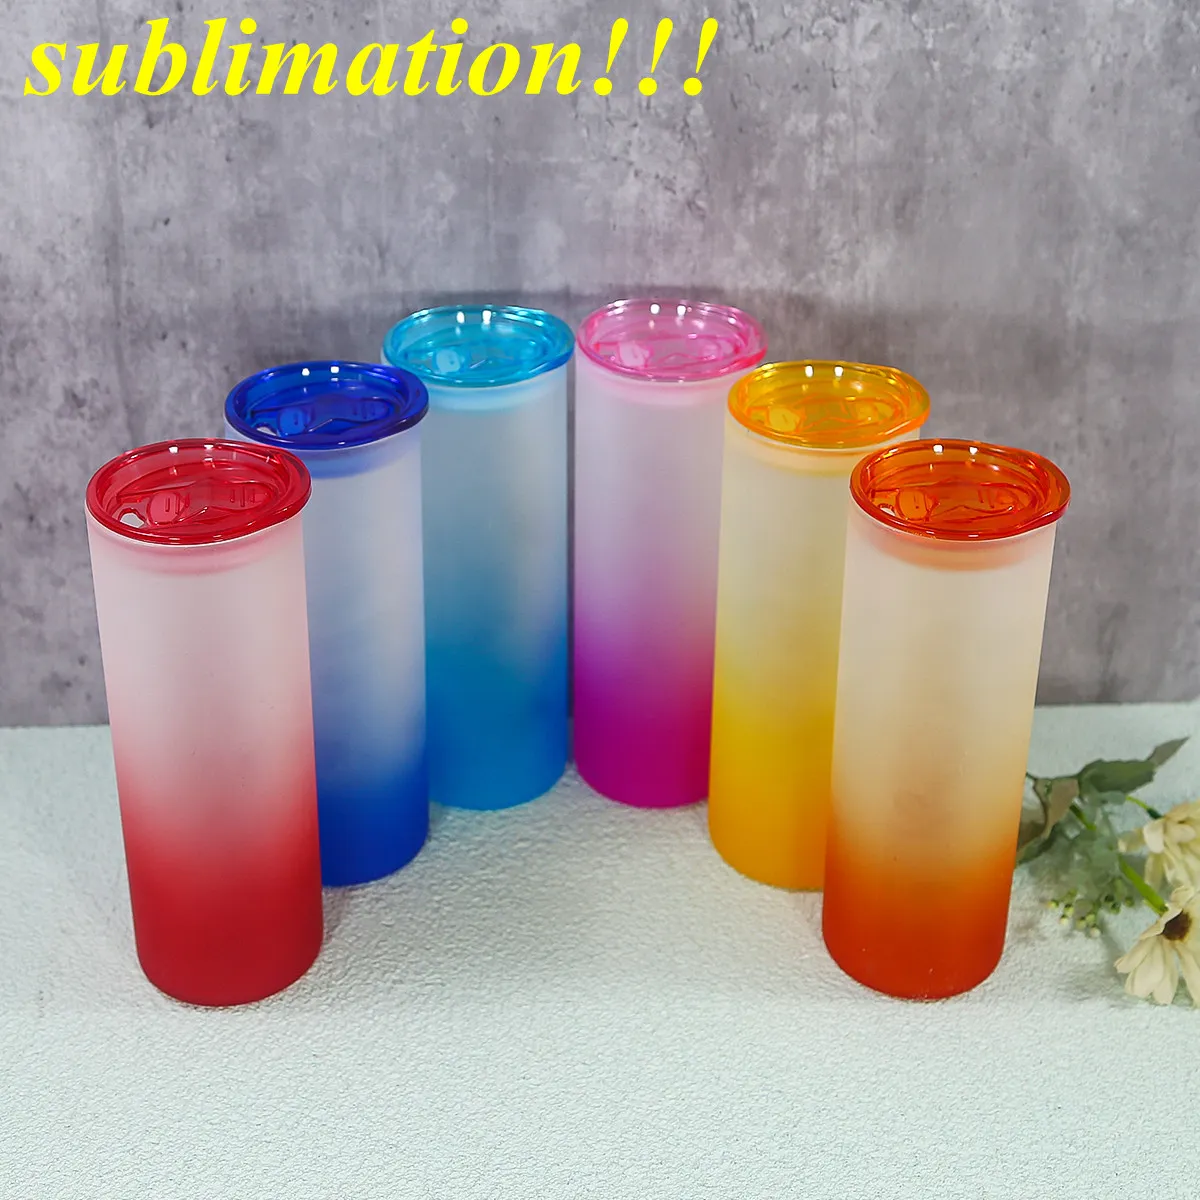 sublimación 25 oz Vumor de vidrio recto con tapas coloridas de vidrio de vidrio de vidrio en blanco Botella de agua reutilizable Taza de cerveza de paja tazas para beber coloridas